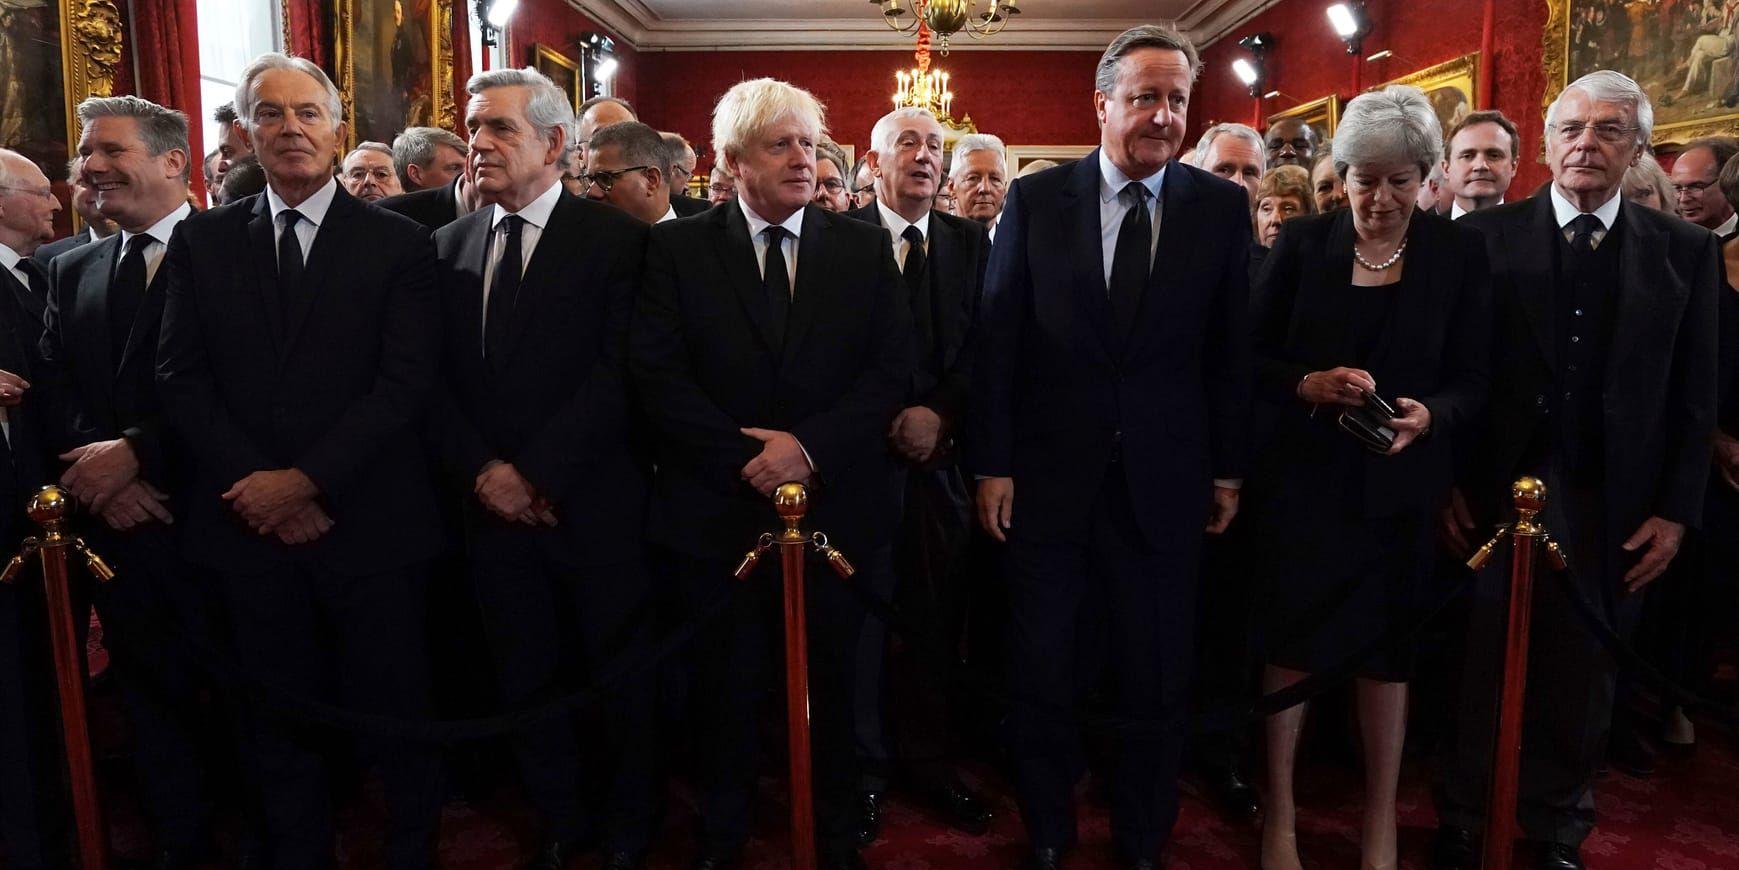 Från vänster: Labourledaren Sir Keir Starmer, tidigare premiärministrarna Tony Blair, Gordon Brown, Boris Johnson, David Cameron, Theresa May och John Major före ceremonin i St James Palace på lördagen.